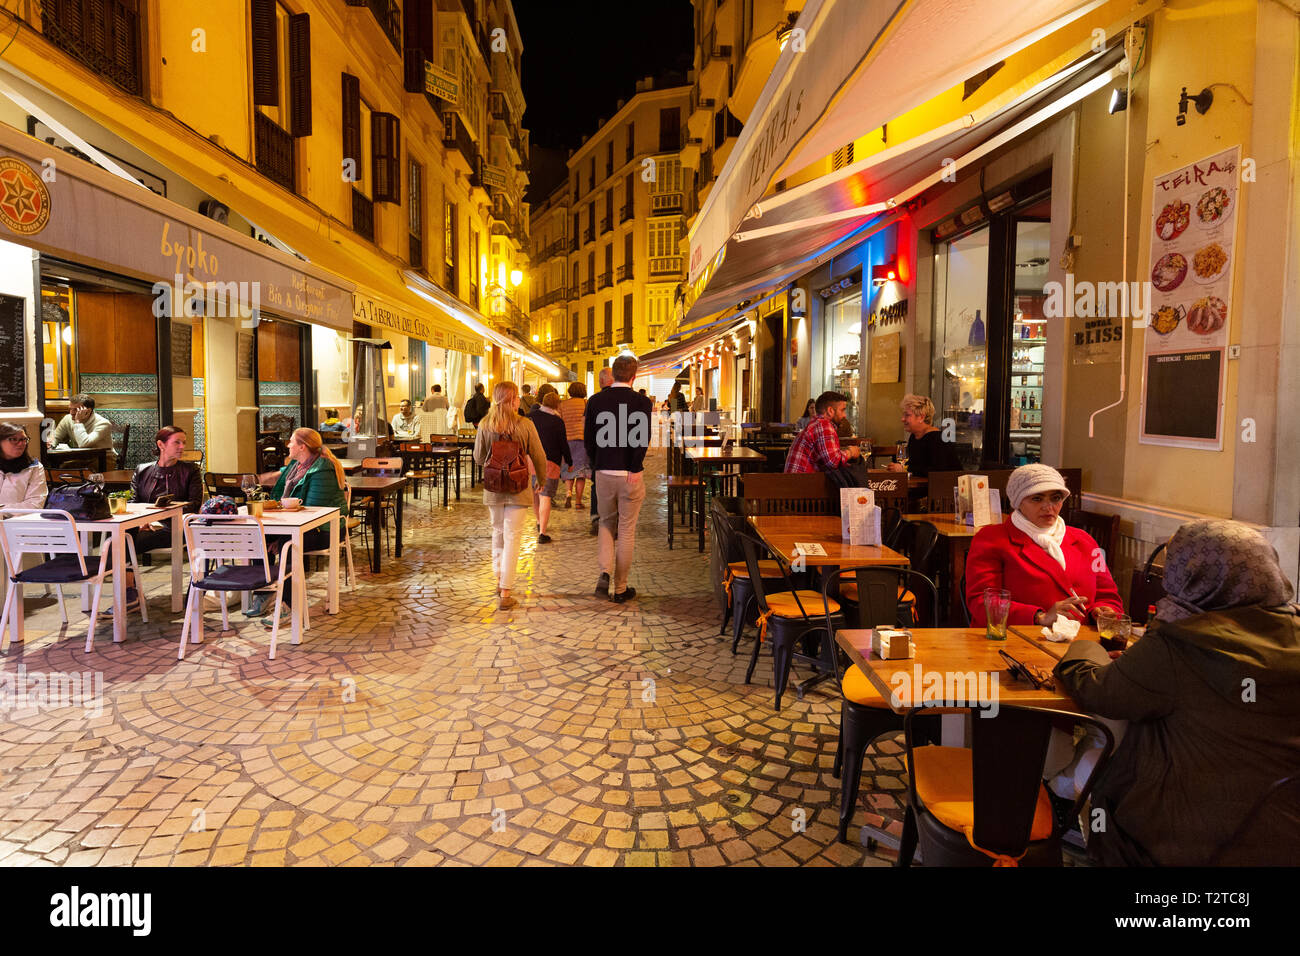 Ristoranti di Malaga - Strada con gente seduta di mangiare in ristoranti caffè e tapas bar di notte, Malaga città vecchia, Andalusia Spagna Foto Stock